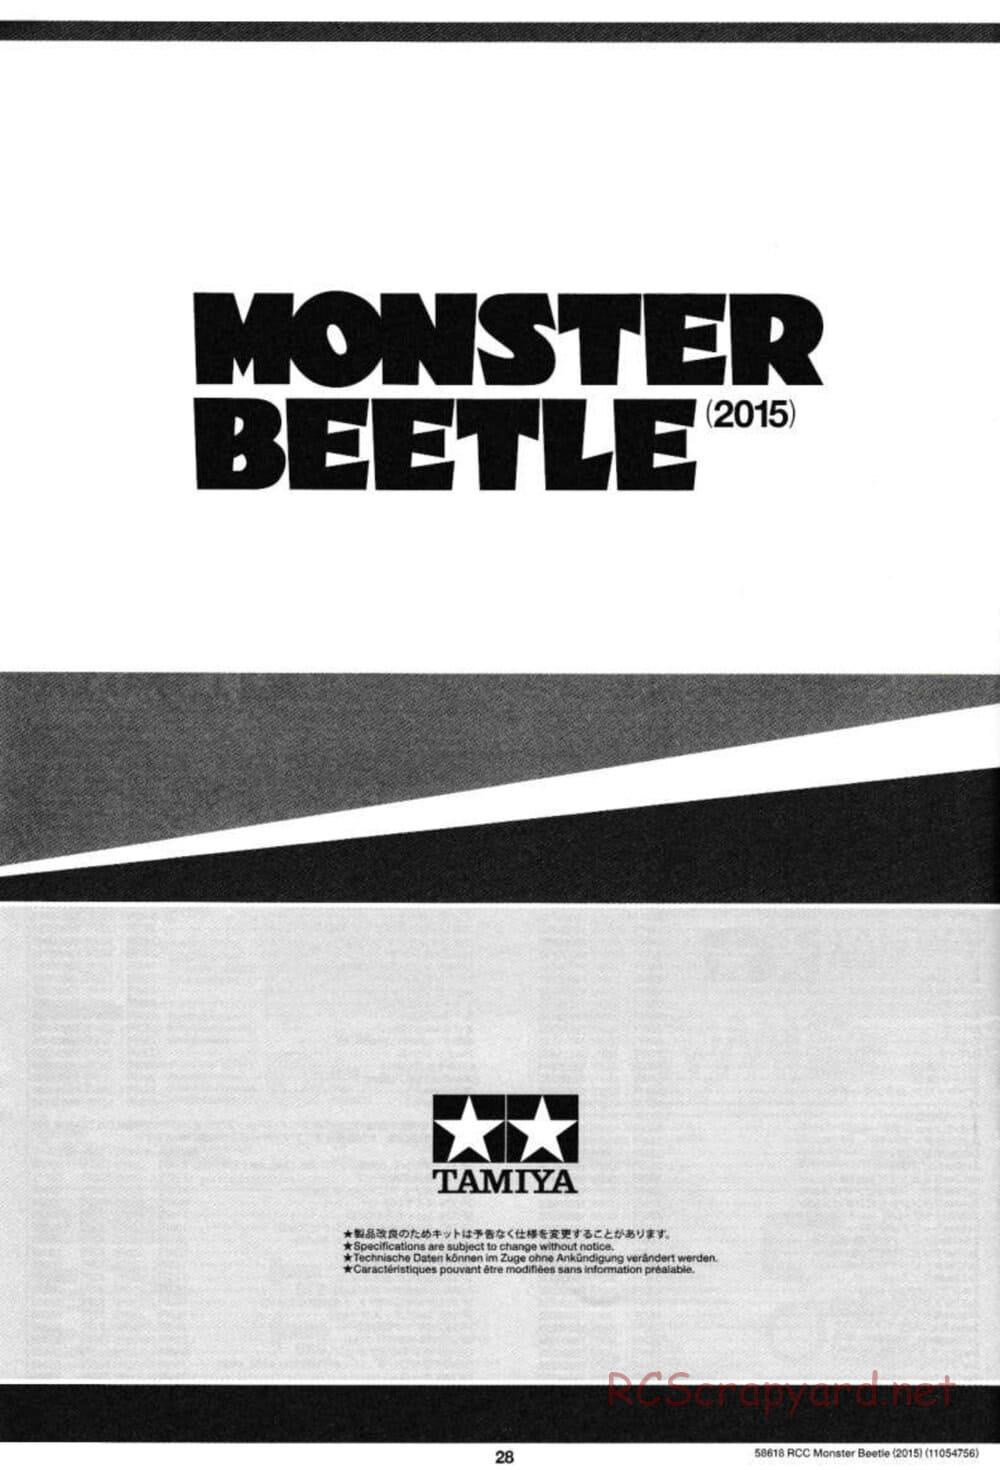 Tamiya - Monster Beetle 2015 - ORV Chassis - Manual - Page 28